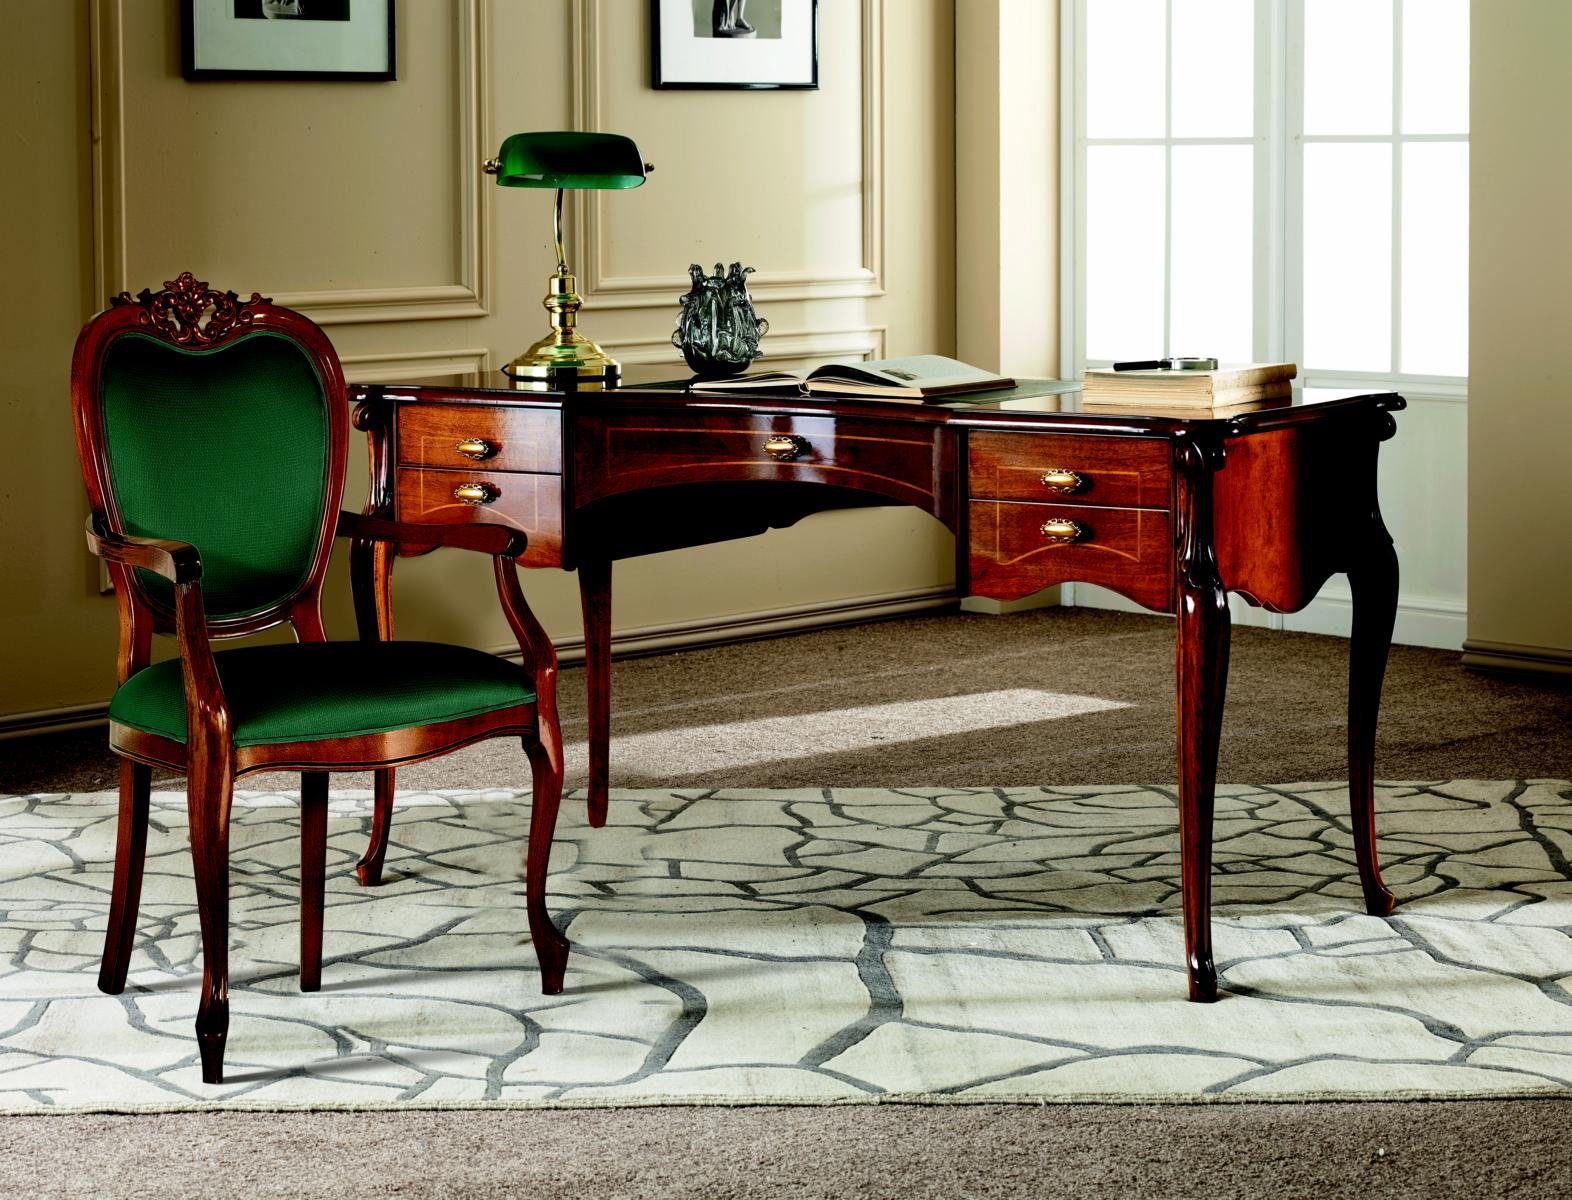 JVmoebel Schreibtisch Italienische Büromöbel Klassisches Barock Luxus Möbel Stil Schreibtisch Holz